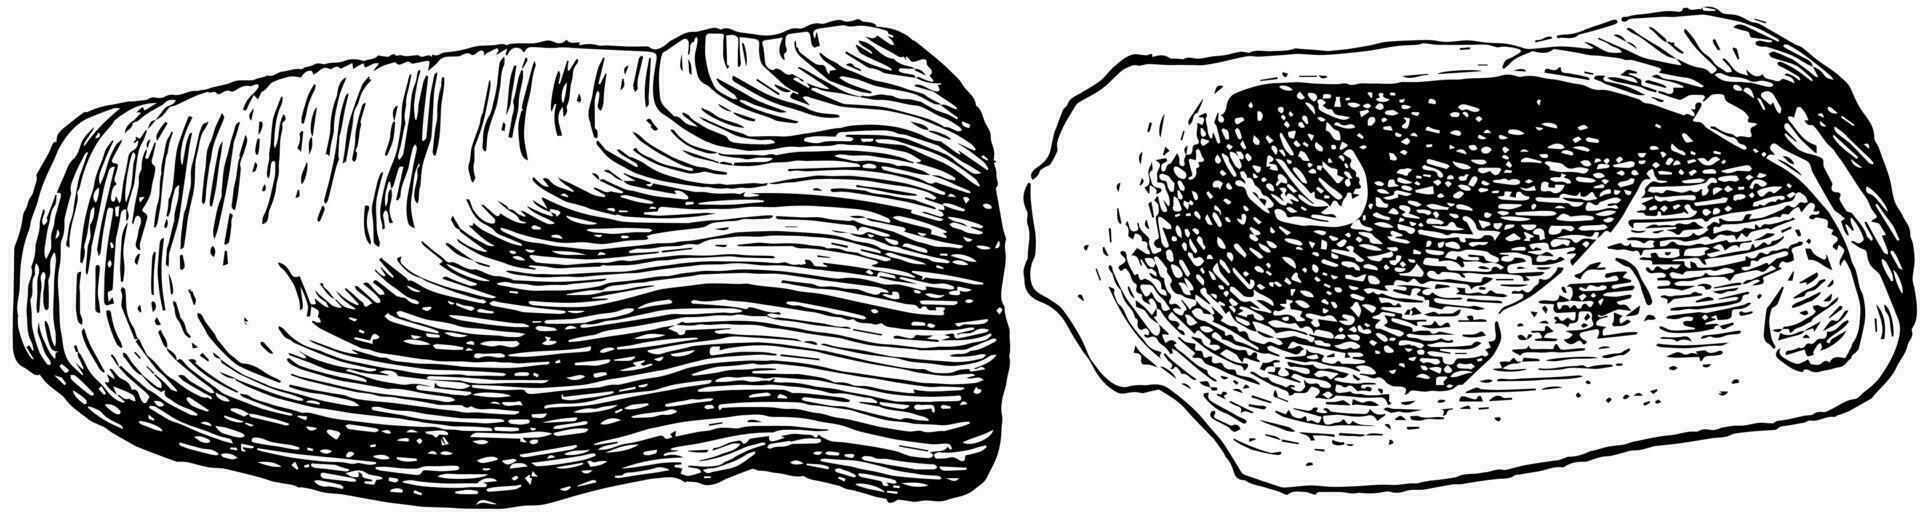 pélécypode, ancien illustration. vecteur